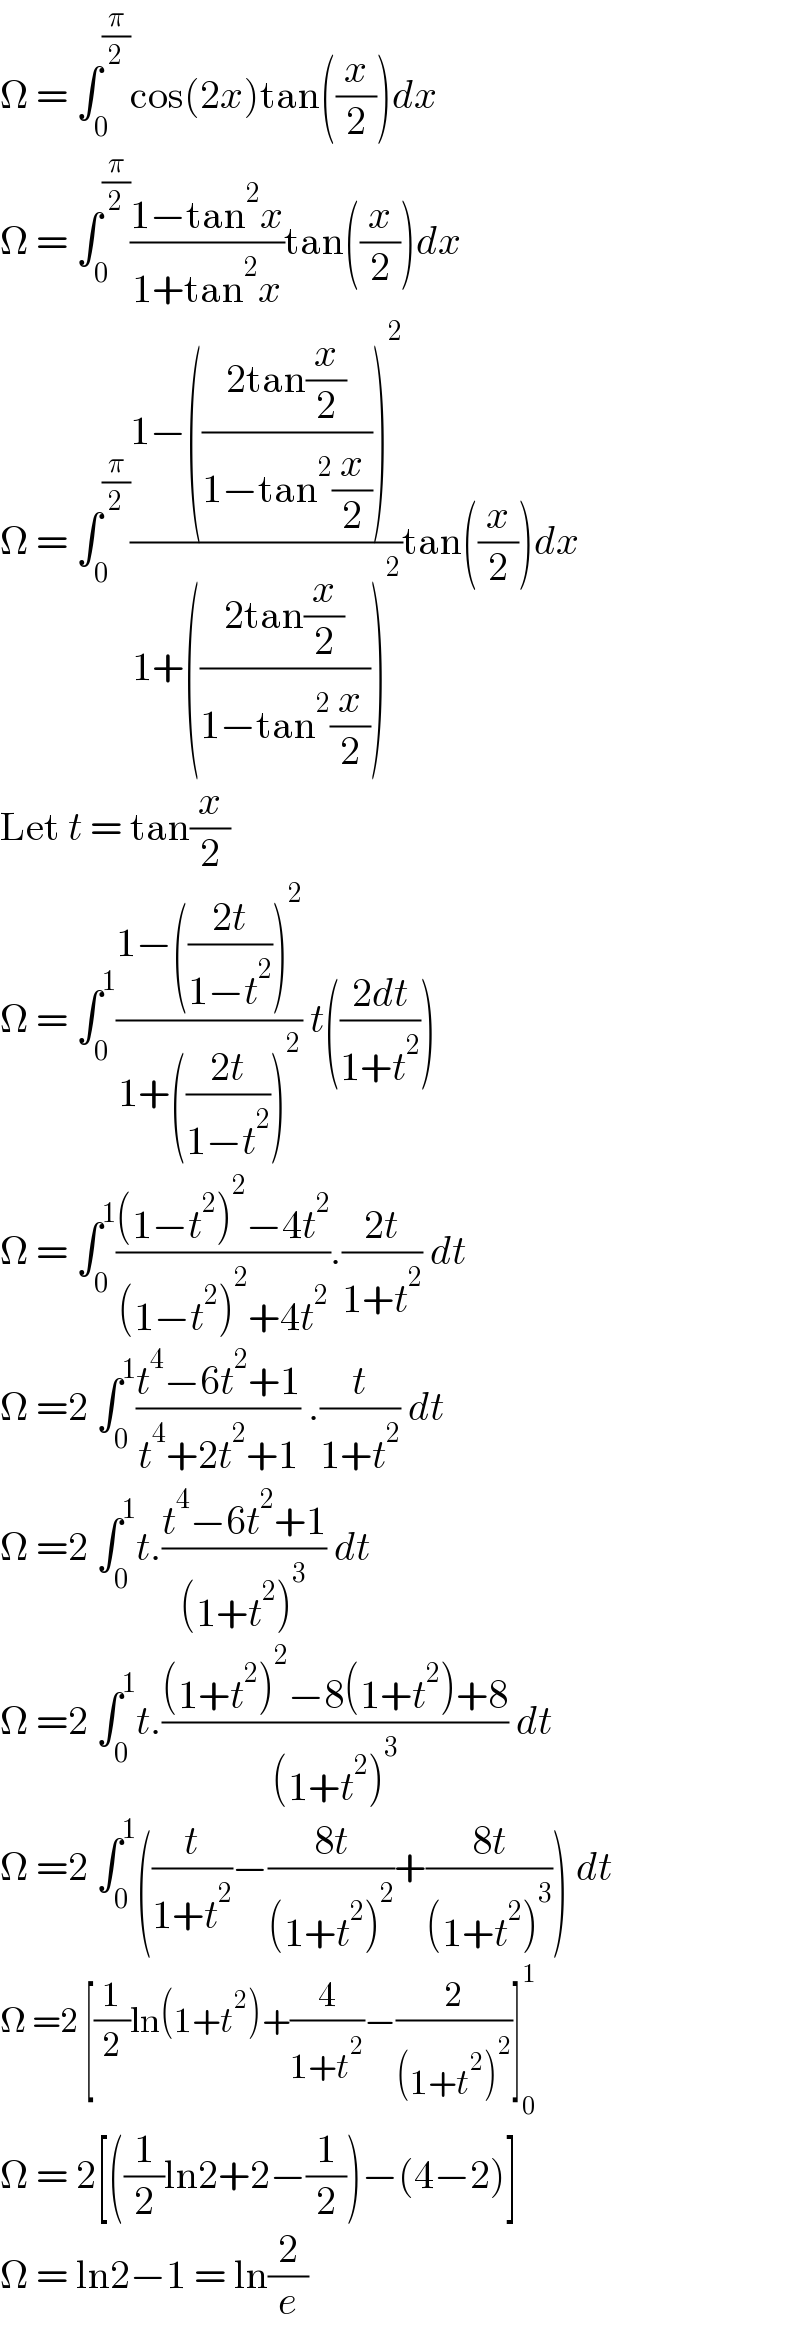 Ω = ∫_0 ^(π/2) cos(2x)tan((x/2))dx  Ω = ∫_0 ^(π/2) ((1−tan^2 x)/(1+tan^2 x))tan((x/2))dx  Ω = ∫_0 ^(π/2) ((1−(((2tan(x/2))/(1−tan^2 (x/2))))^2 )/(1+(((2tan(x/2))/(1−tan^2 (x/2))))^2 ))tan((x/2))dx  Let t = tan(x/2)  Ω = ∫_0 ^1 ((1−(((2t)/(1−t^2 )))^2 )/(1+(((2t)/(1−t^2 )))^2 )) t(((2dt)/(1+t^2 )))  Ω = ∫_0 ^1 (((1−t^2 )^2 −4t^2 )/((1−t^2 )^2 +4t^2 )).((2t)/(1+t^2 )) dt  Ω =2 ∫_0 ^1 ((t^4 −6t^2 +1)/(t^4 +2t^2 +1)) .(t/(1+t^2 )) dt  Ω =2 ∫_0 ^1 t.((t^4 −6t^2 +1)/((1+t^2 )^3 )) dt  Ω =2 ∫_0 ^1 t.(((1+t^2 )^2 −8(1+t^2 )+8)/((1+t^2 )^3 )) dt  Ω =2 ∫_0 ^1 ((t/(1+t^2 ))−((8t)/((1+t^2 )^2 ))+((8t)/((1+t^2 )^3 ))) dt  Ω =2 [(1/2)ln(1+t^2 )+(4/(1+t^2 ))−(2/((1+t^2 )^2 ))]_0 ^1   Ω = 2[((1/2)ln2+2−(1/2))−(4−2)]  Ω = ln2−1 = ln(2/e)  